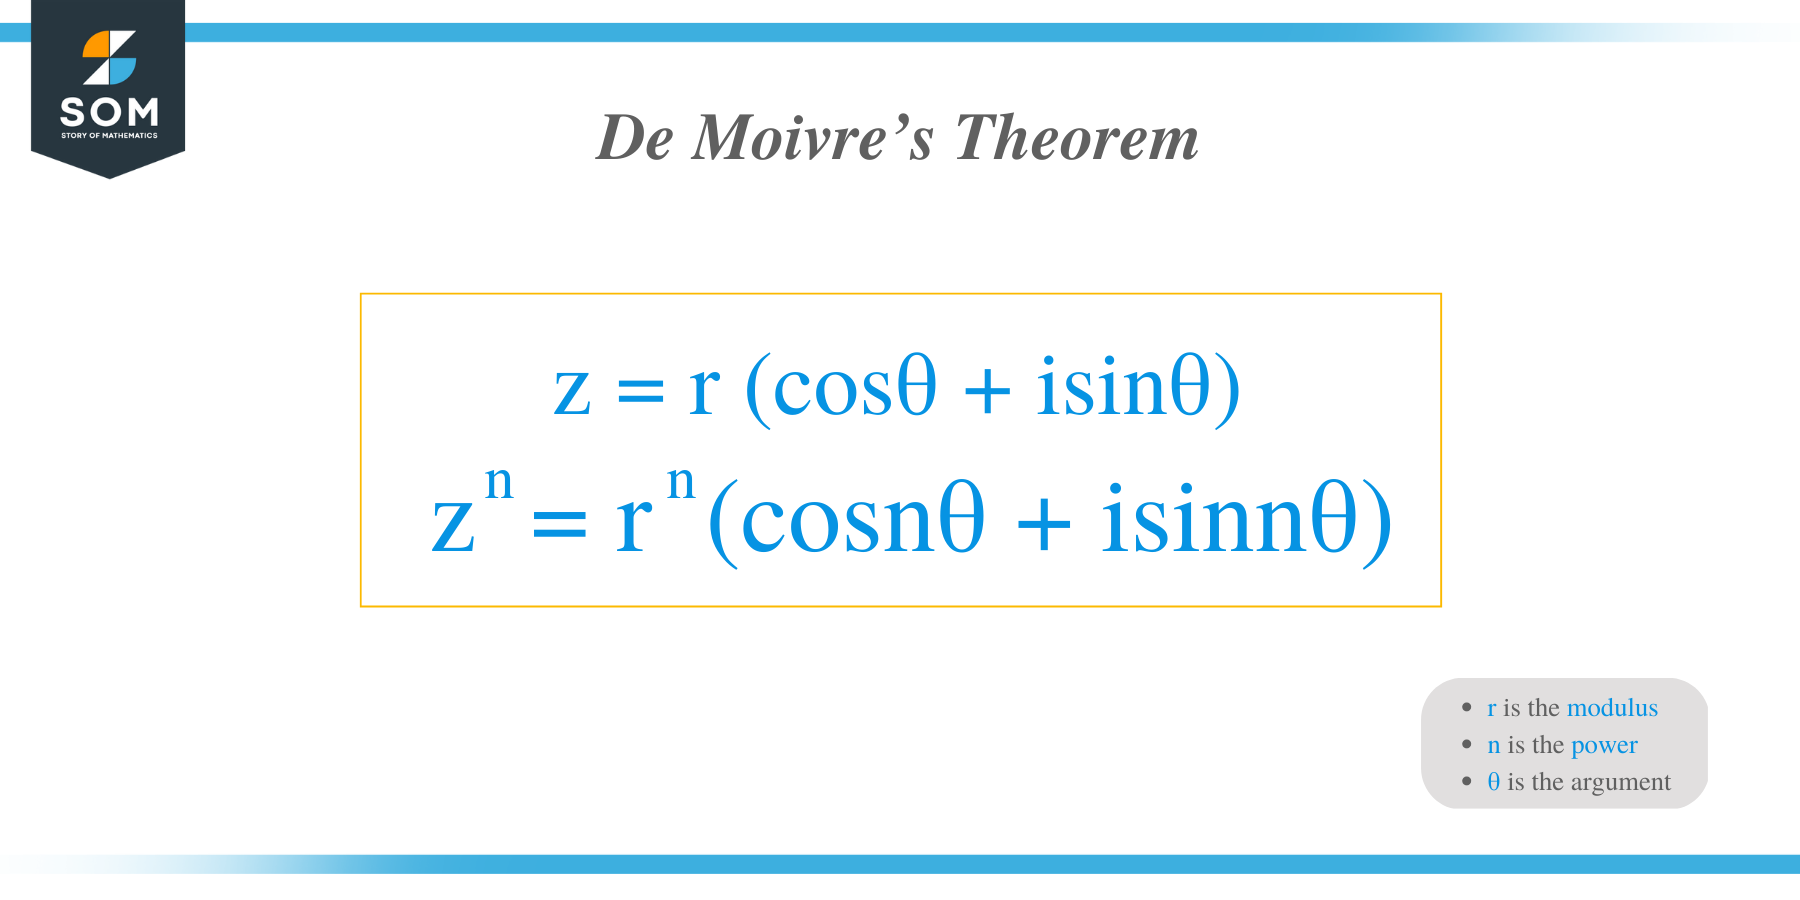 De Moivre’s Theorem formula